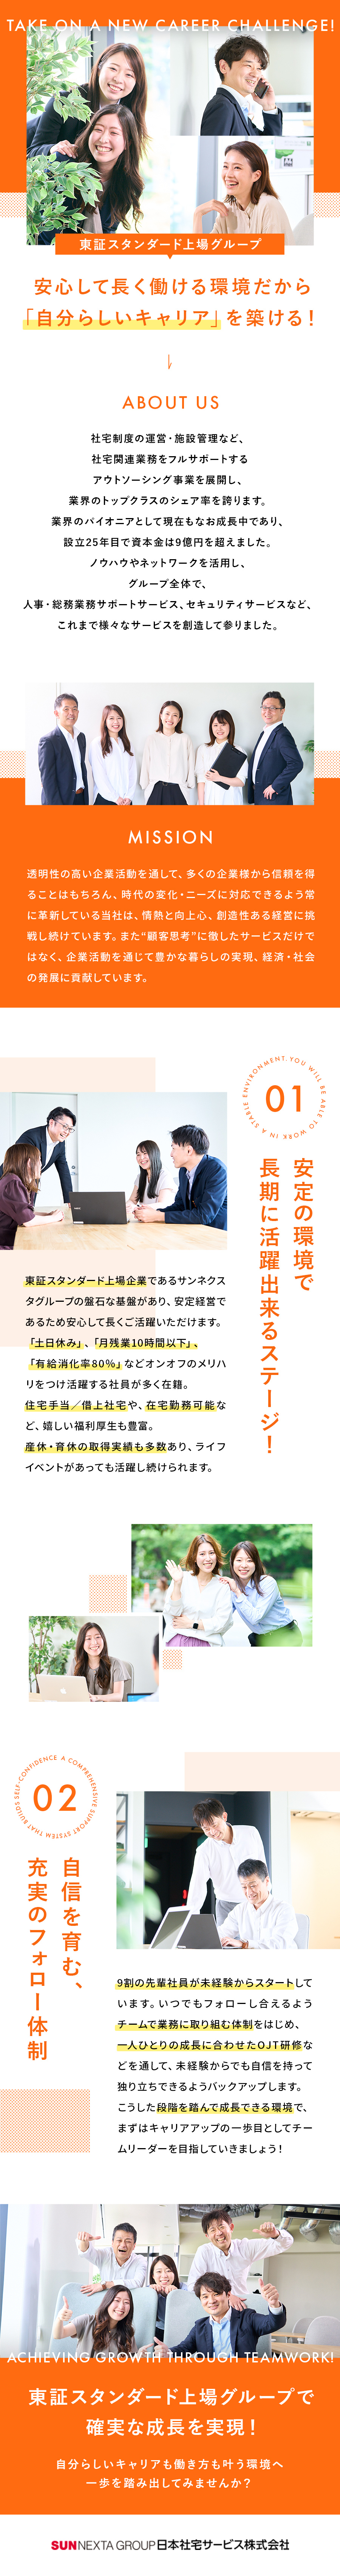 日本社宅サービス株式会社からのメッセージ